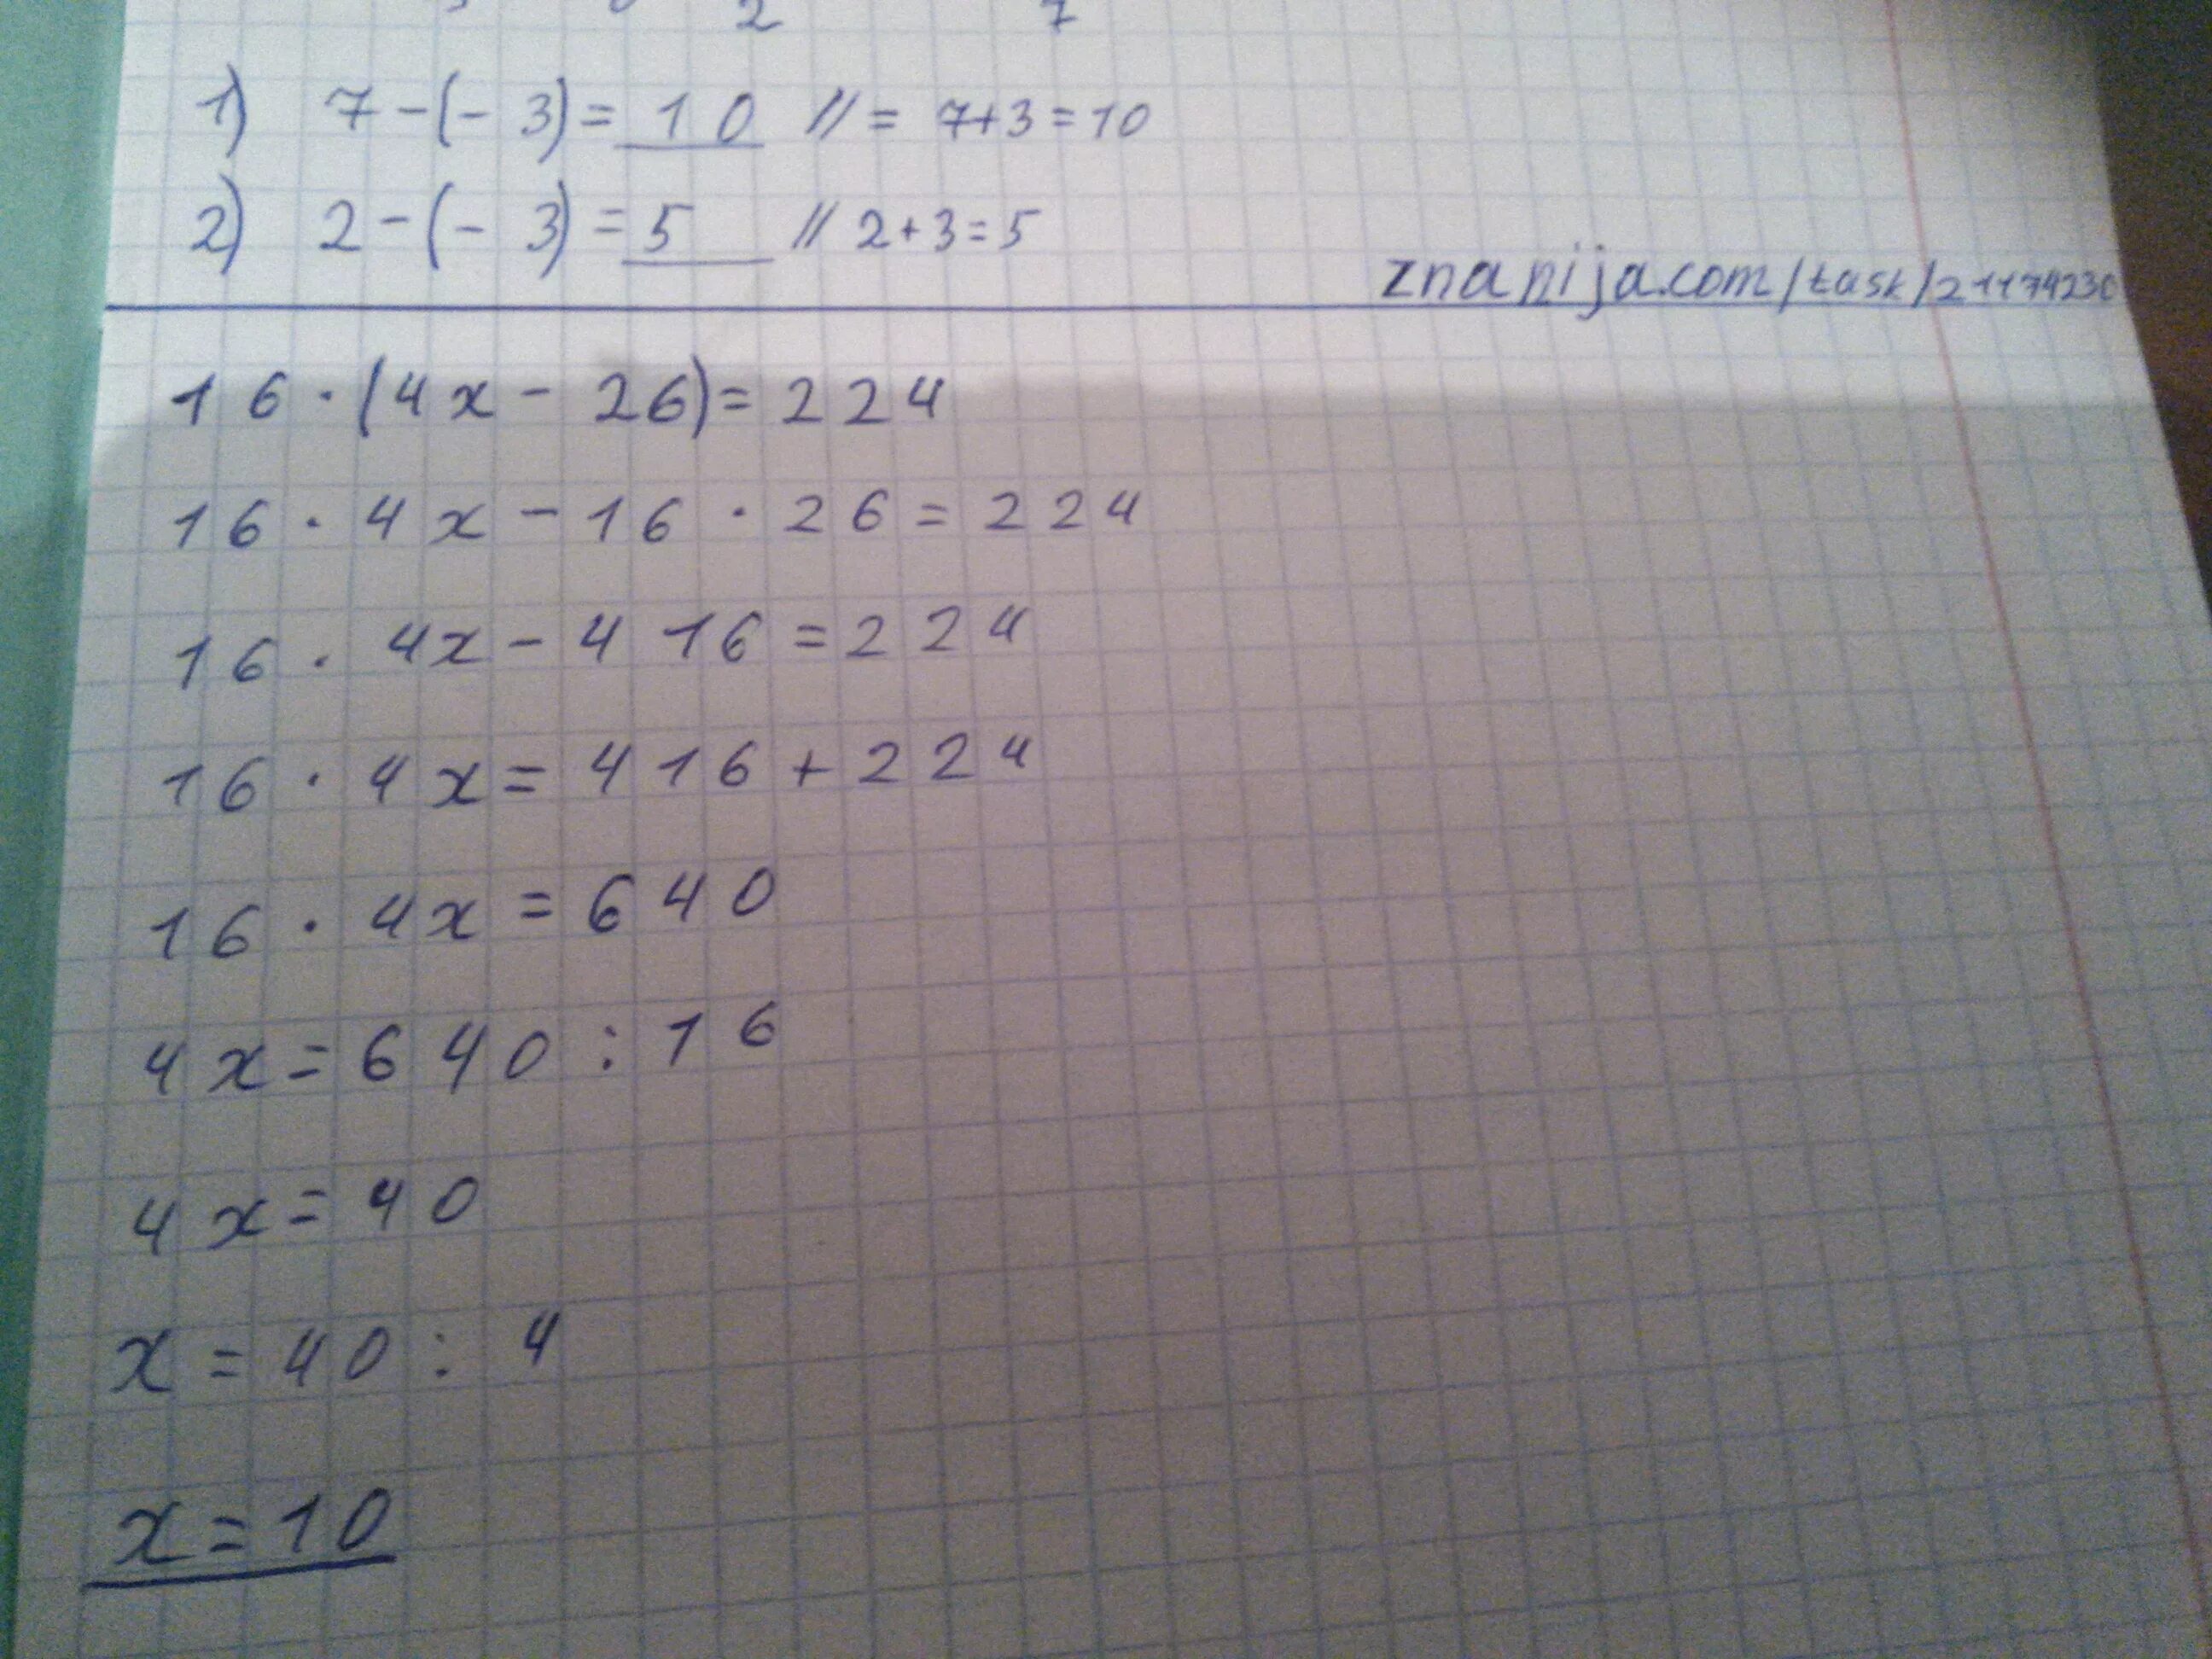 2 1 8 1 5 16 решение. 16(4х-26)=224. (4×Х+26):7=14. Решить уравнение 16 4x-26) 224. 16(4х-26)=224 математика 5 класс m.